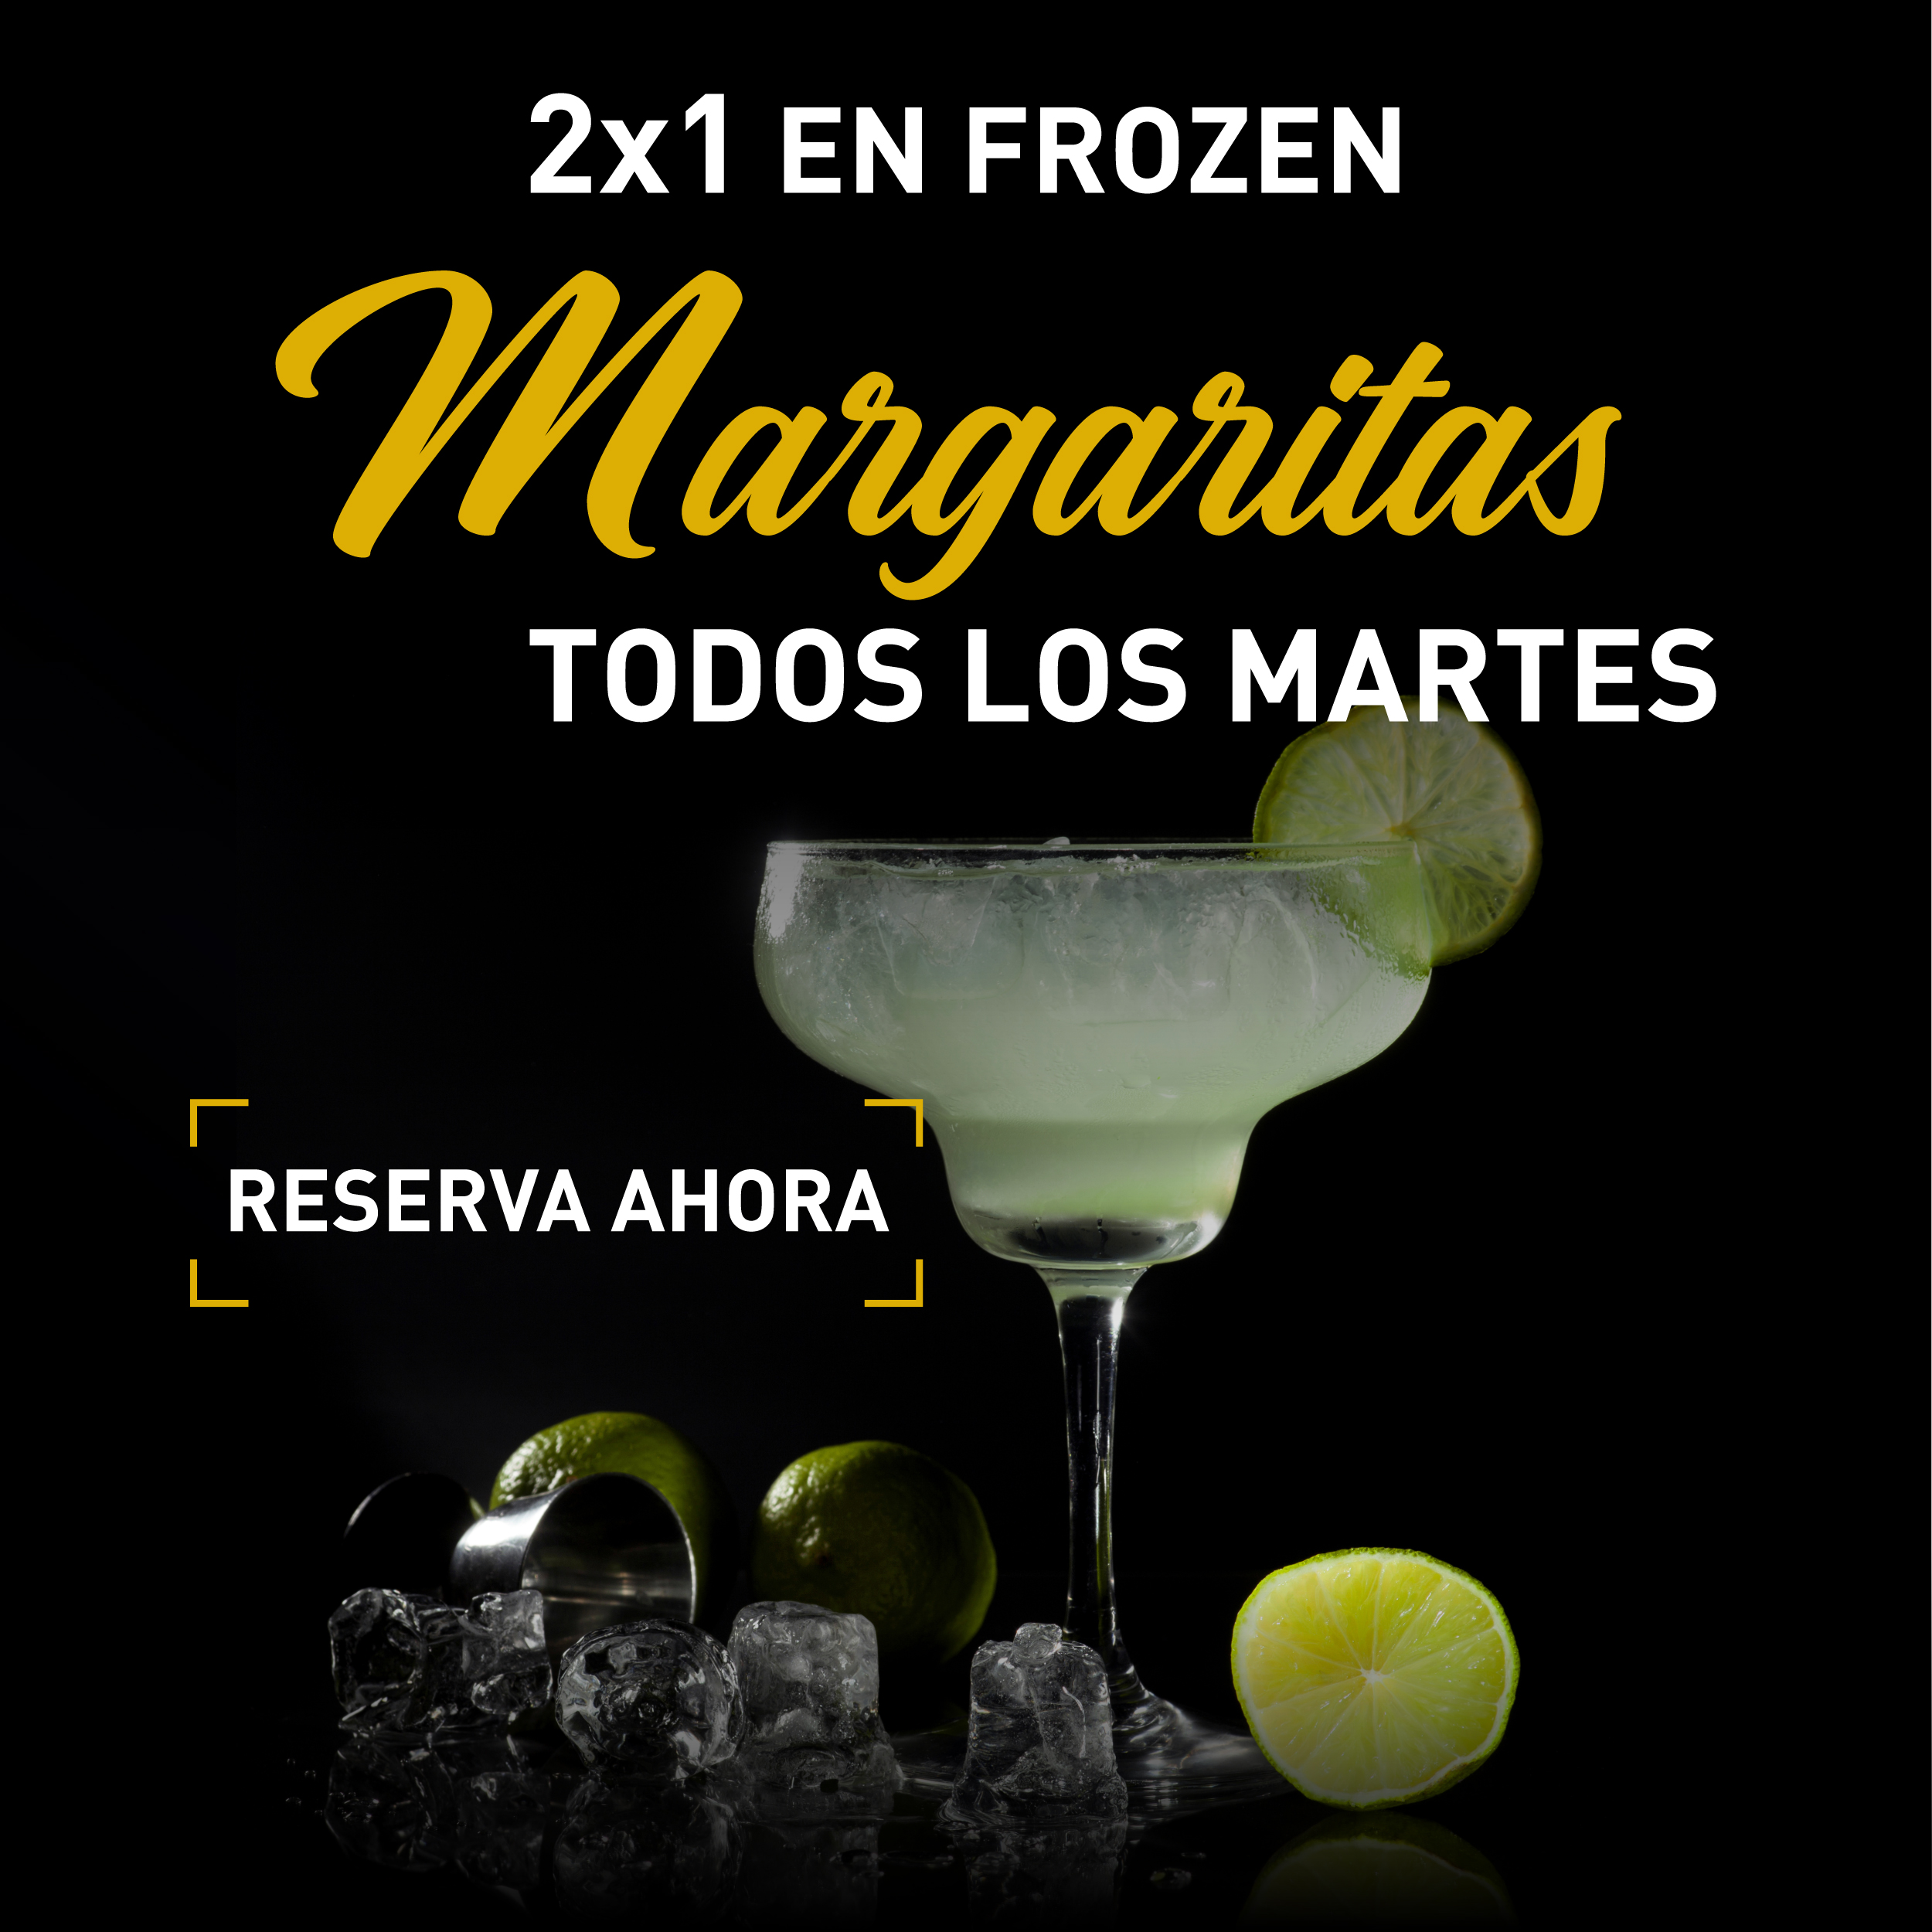 Margarita 2 X 1 todos los martes<br />
